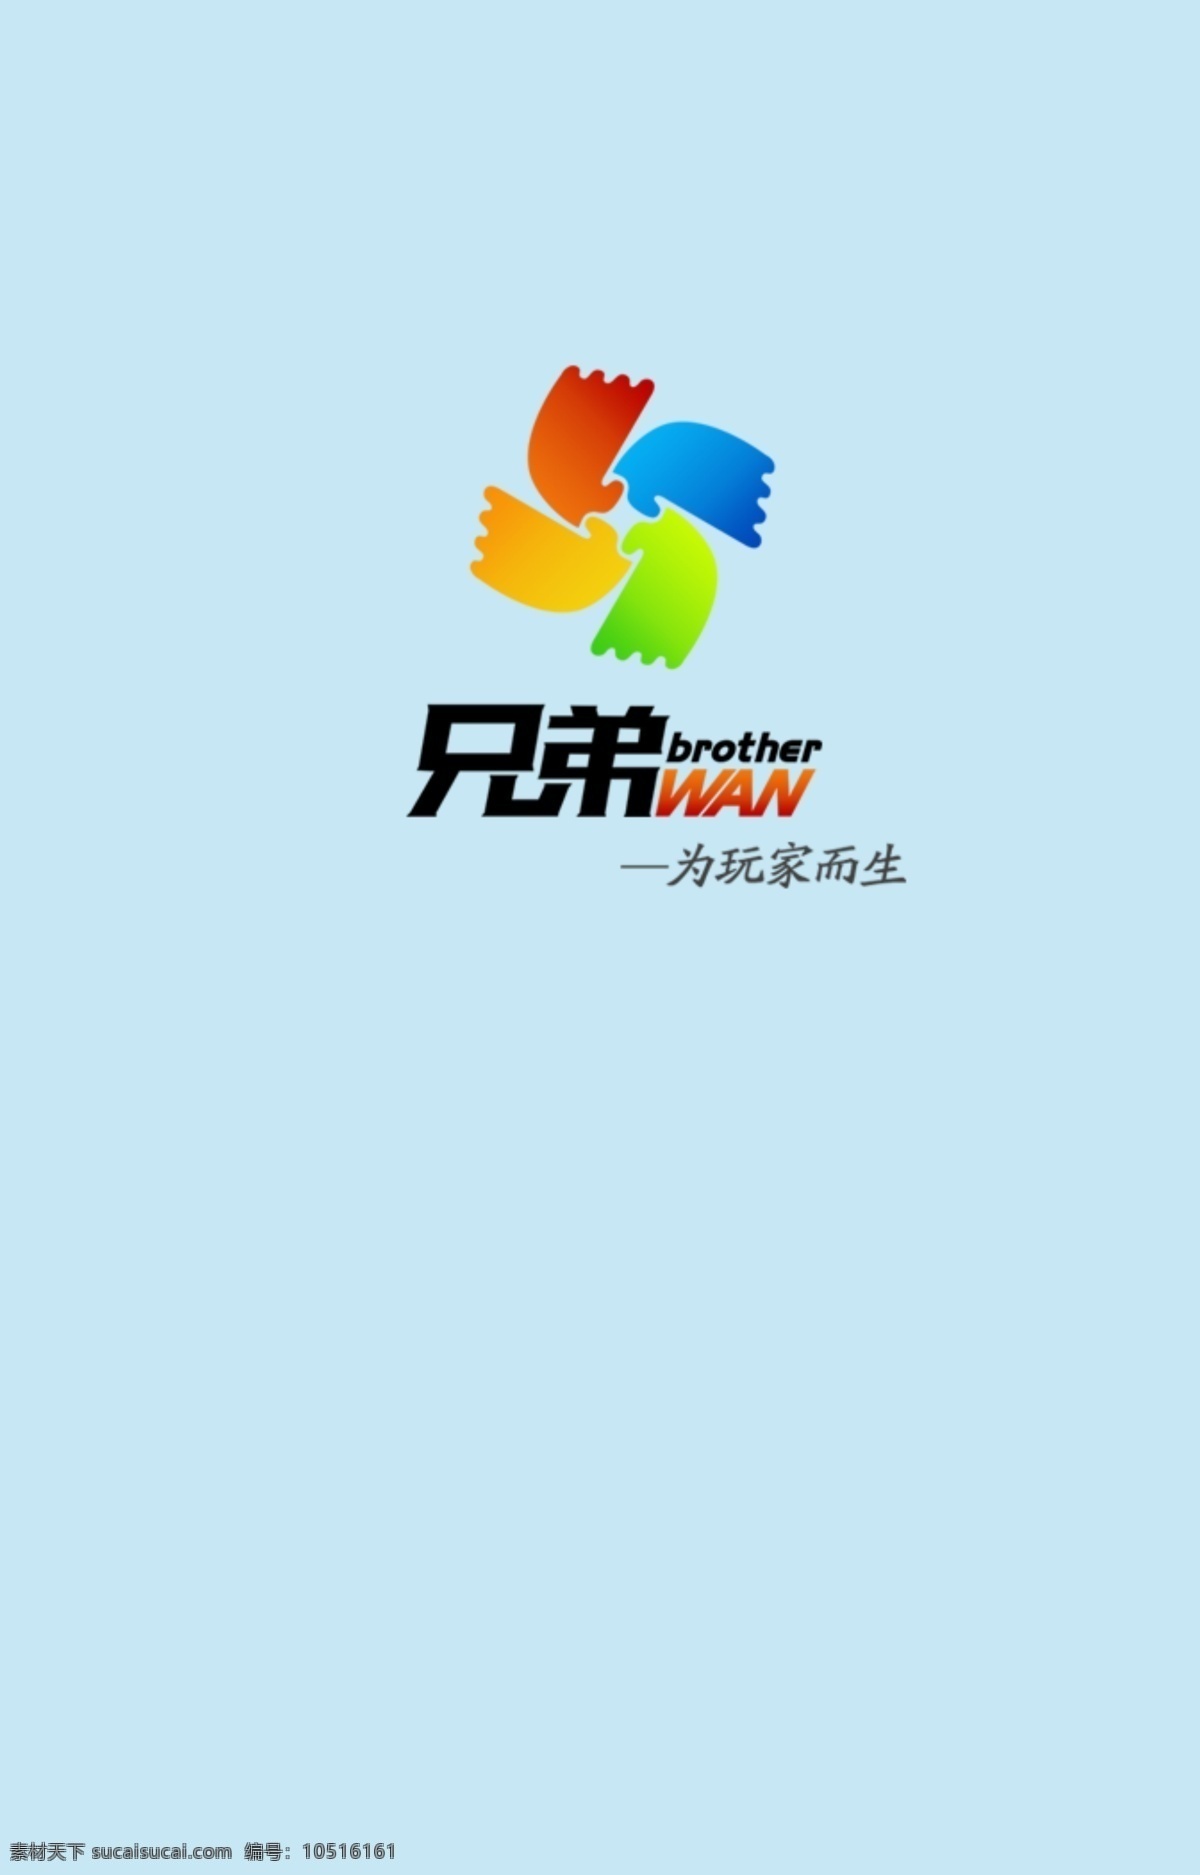 兄弟 玩家 游戏 科技公司 电竞 logo 彩虹 手掌 旋转 回旋 彩色 缤纷企业标志 logo设计